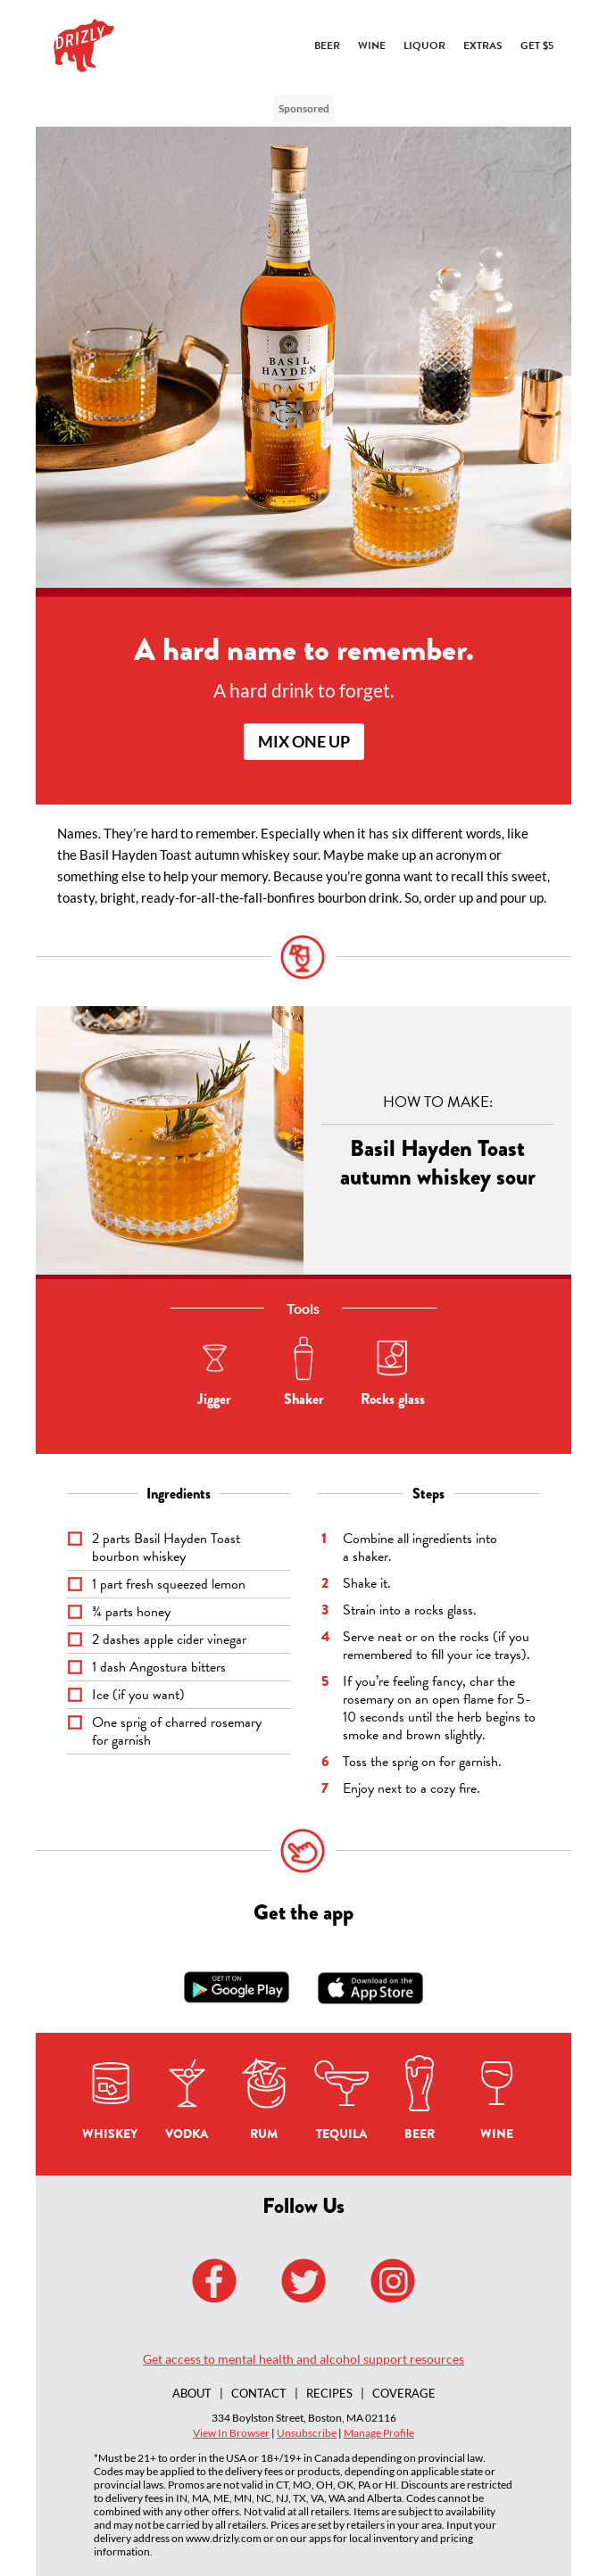 Basil Hayden Toast autumn whiskey sour.